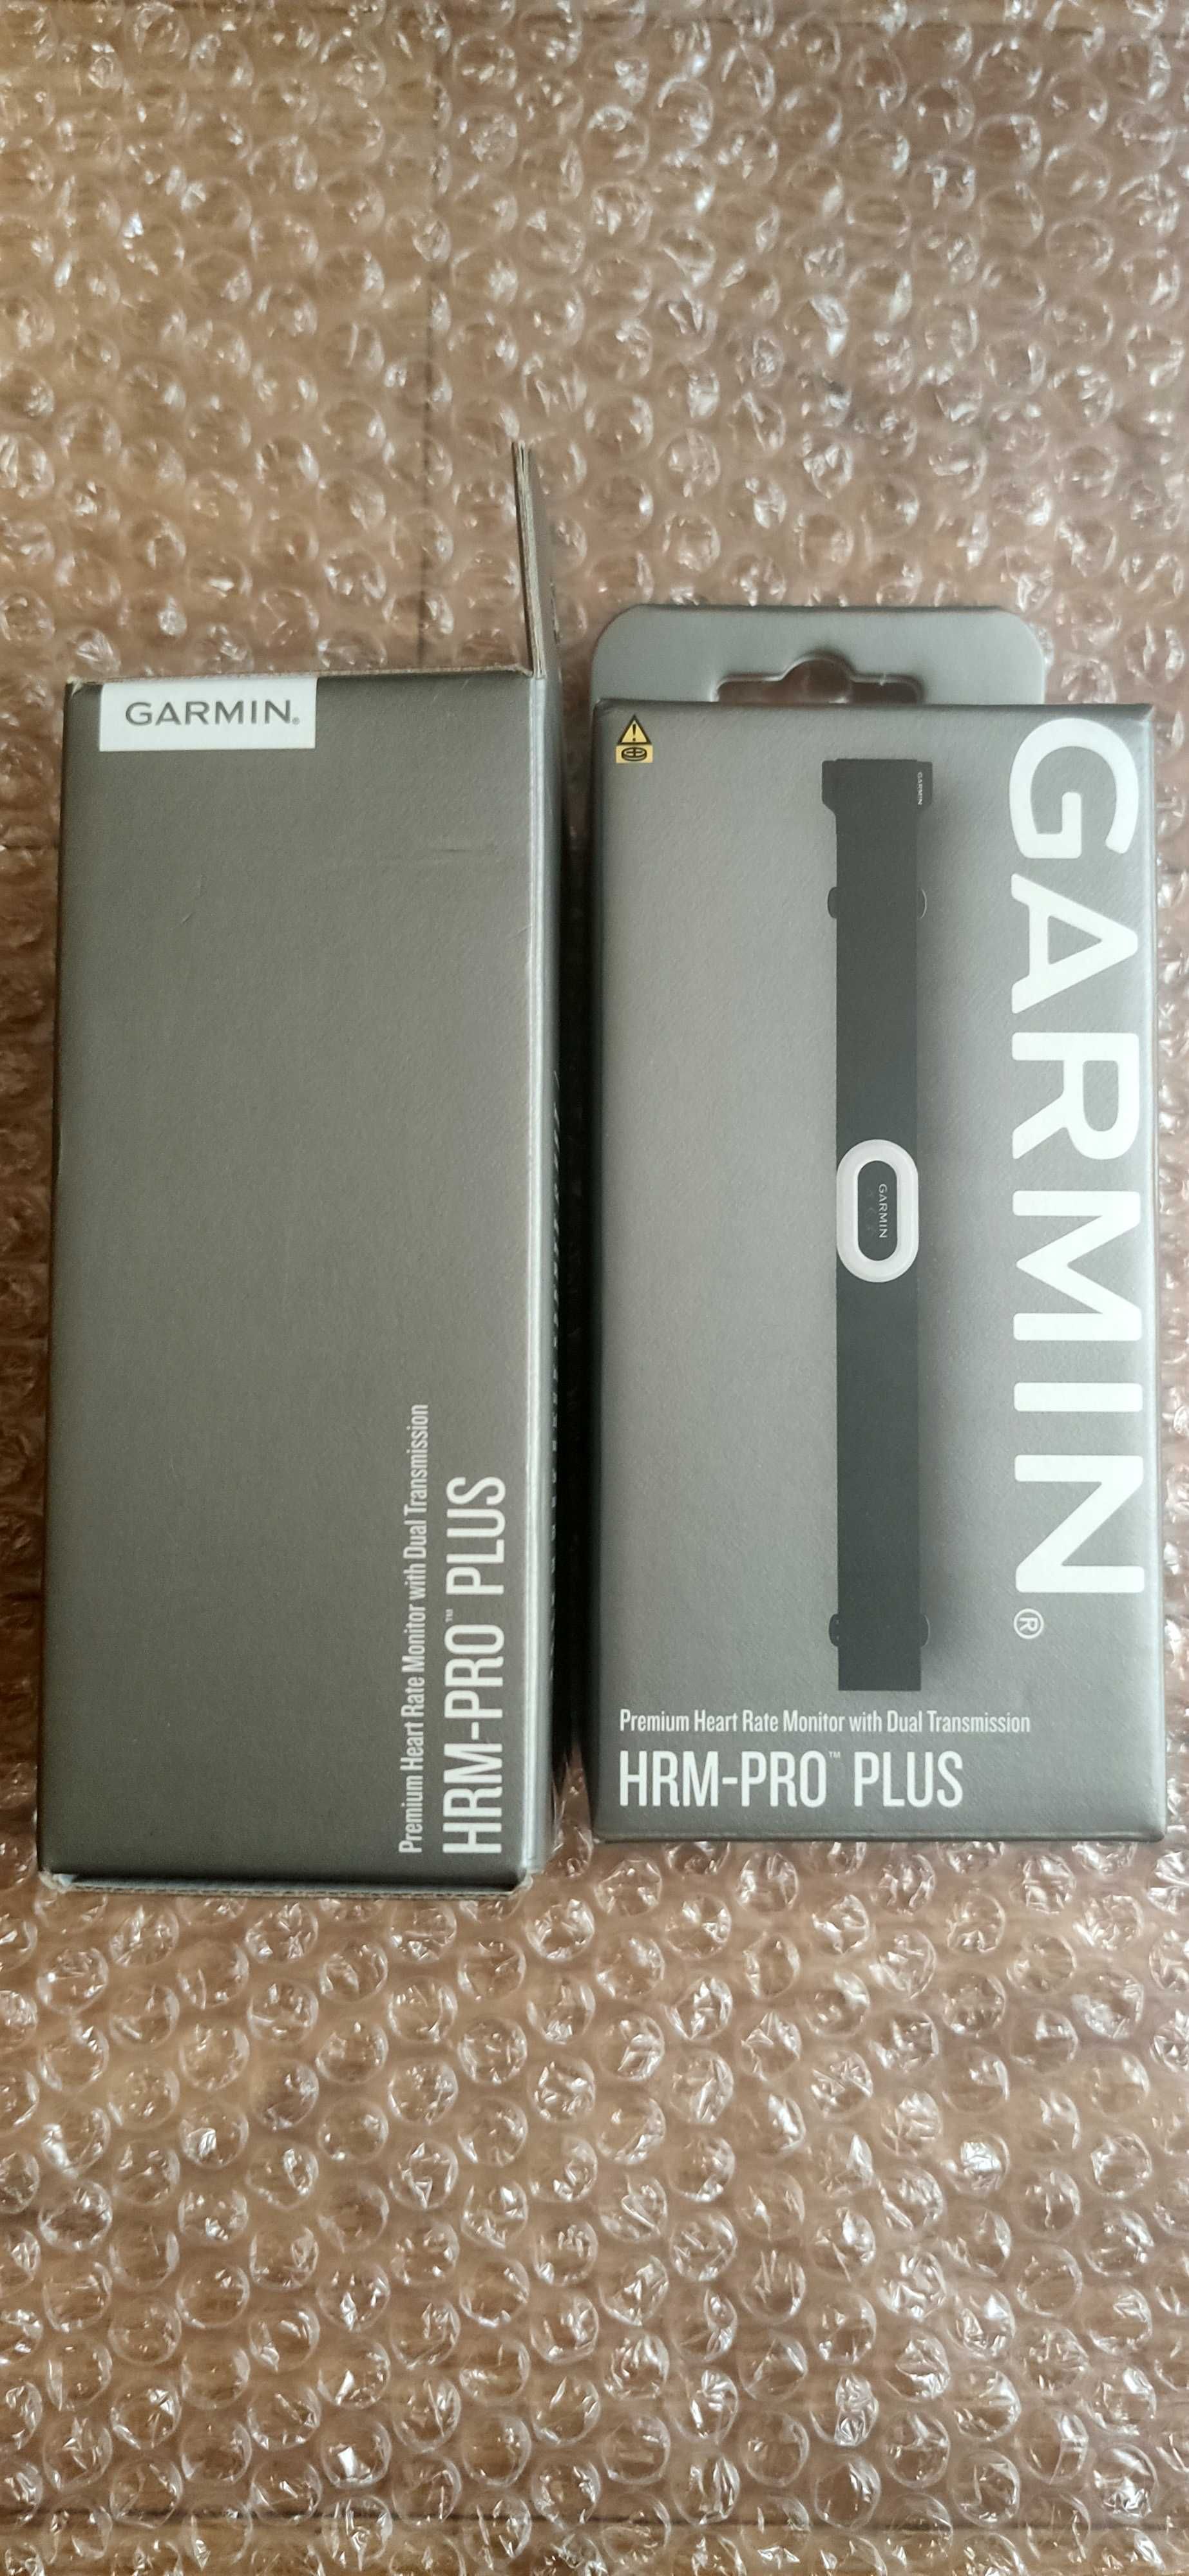 Garmin нагрудные пульсометры HRM Pro Plus